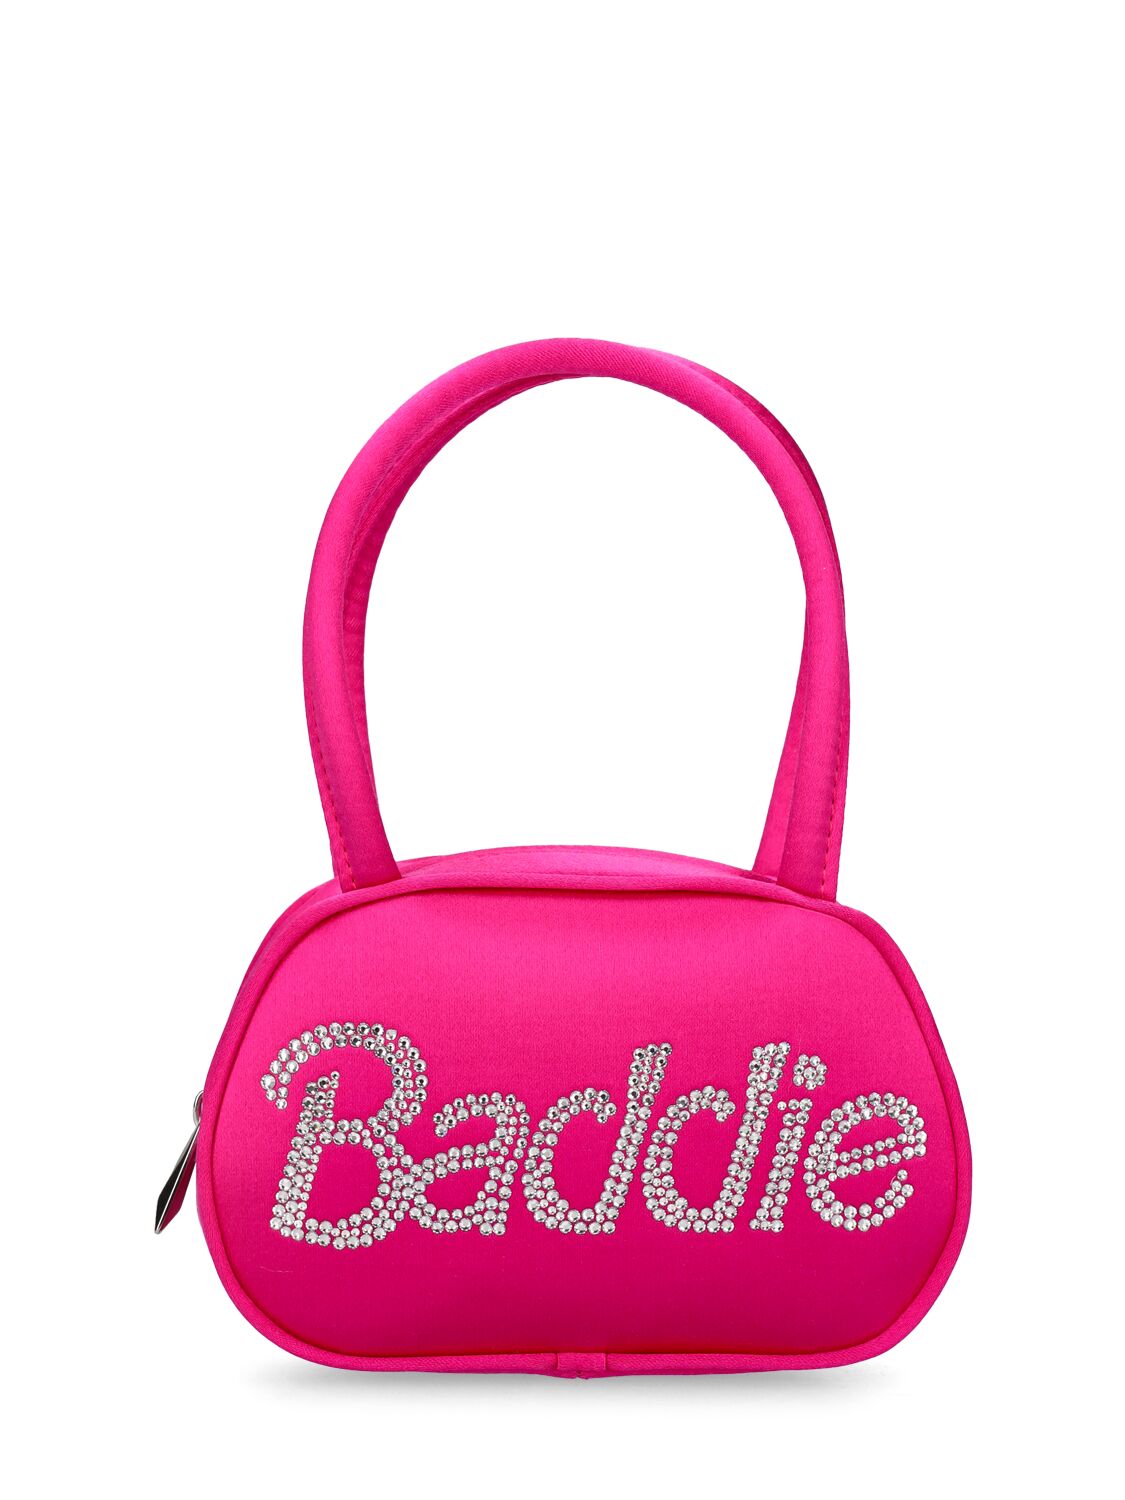 Superamini Baddie Satin Top Handle Bag